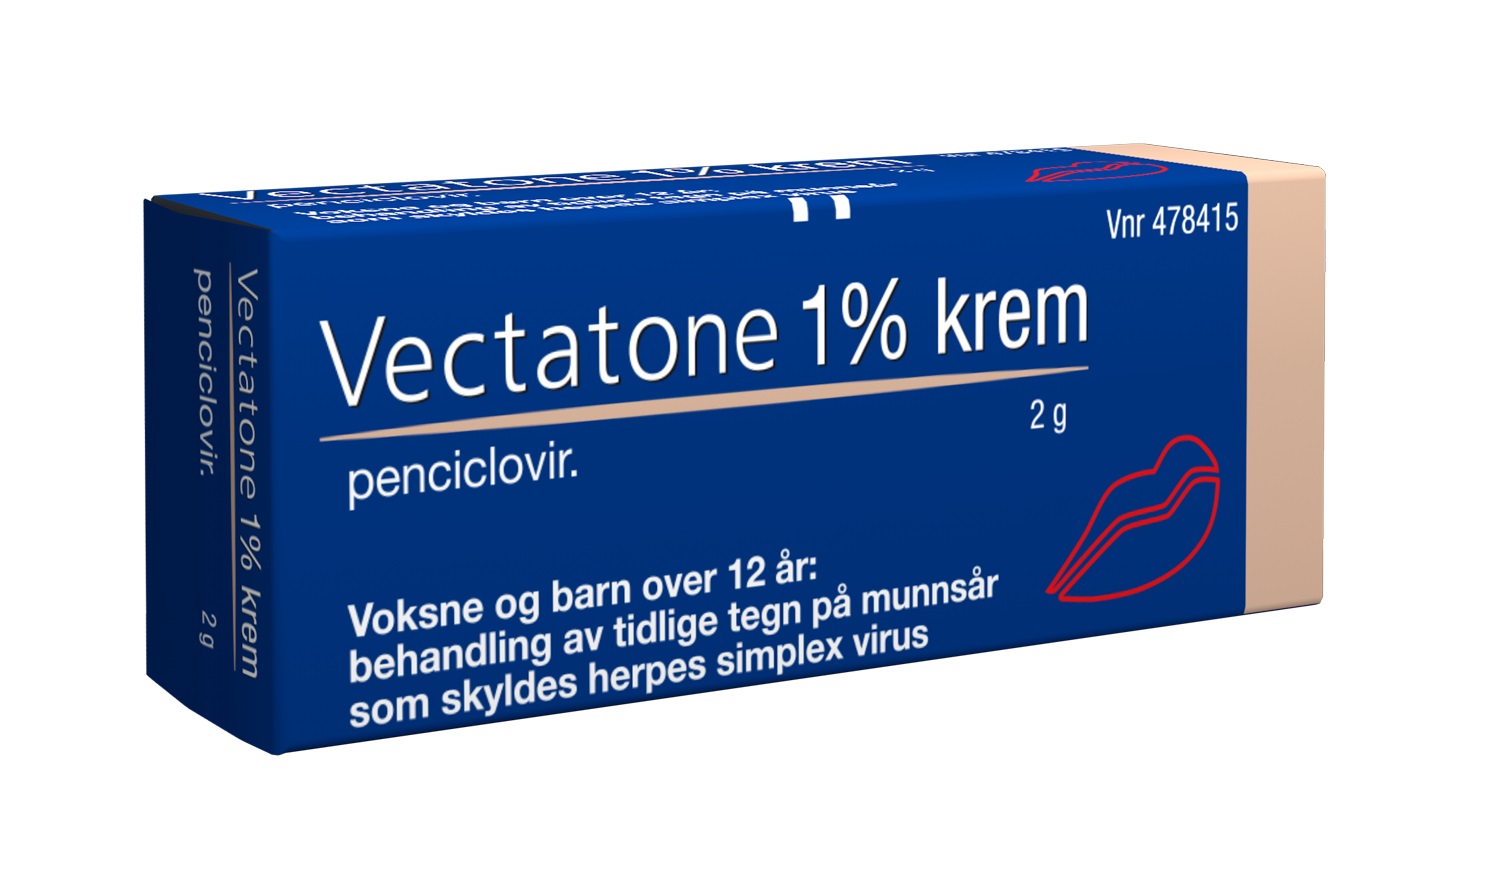 Vectatone Krem 1%, 2 gram